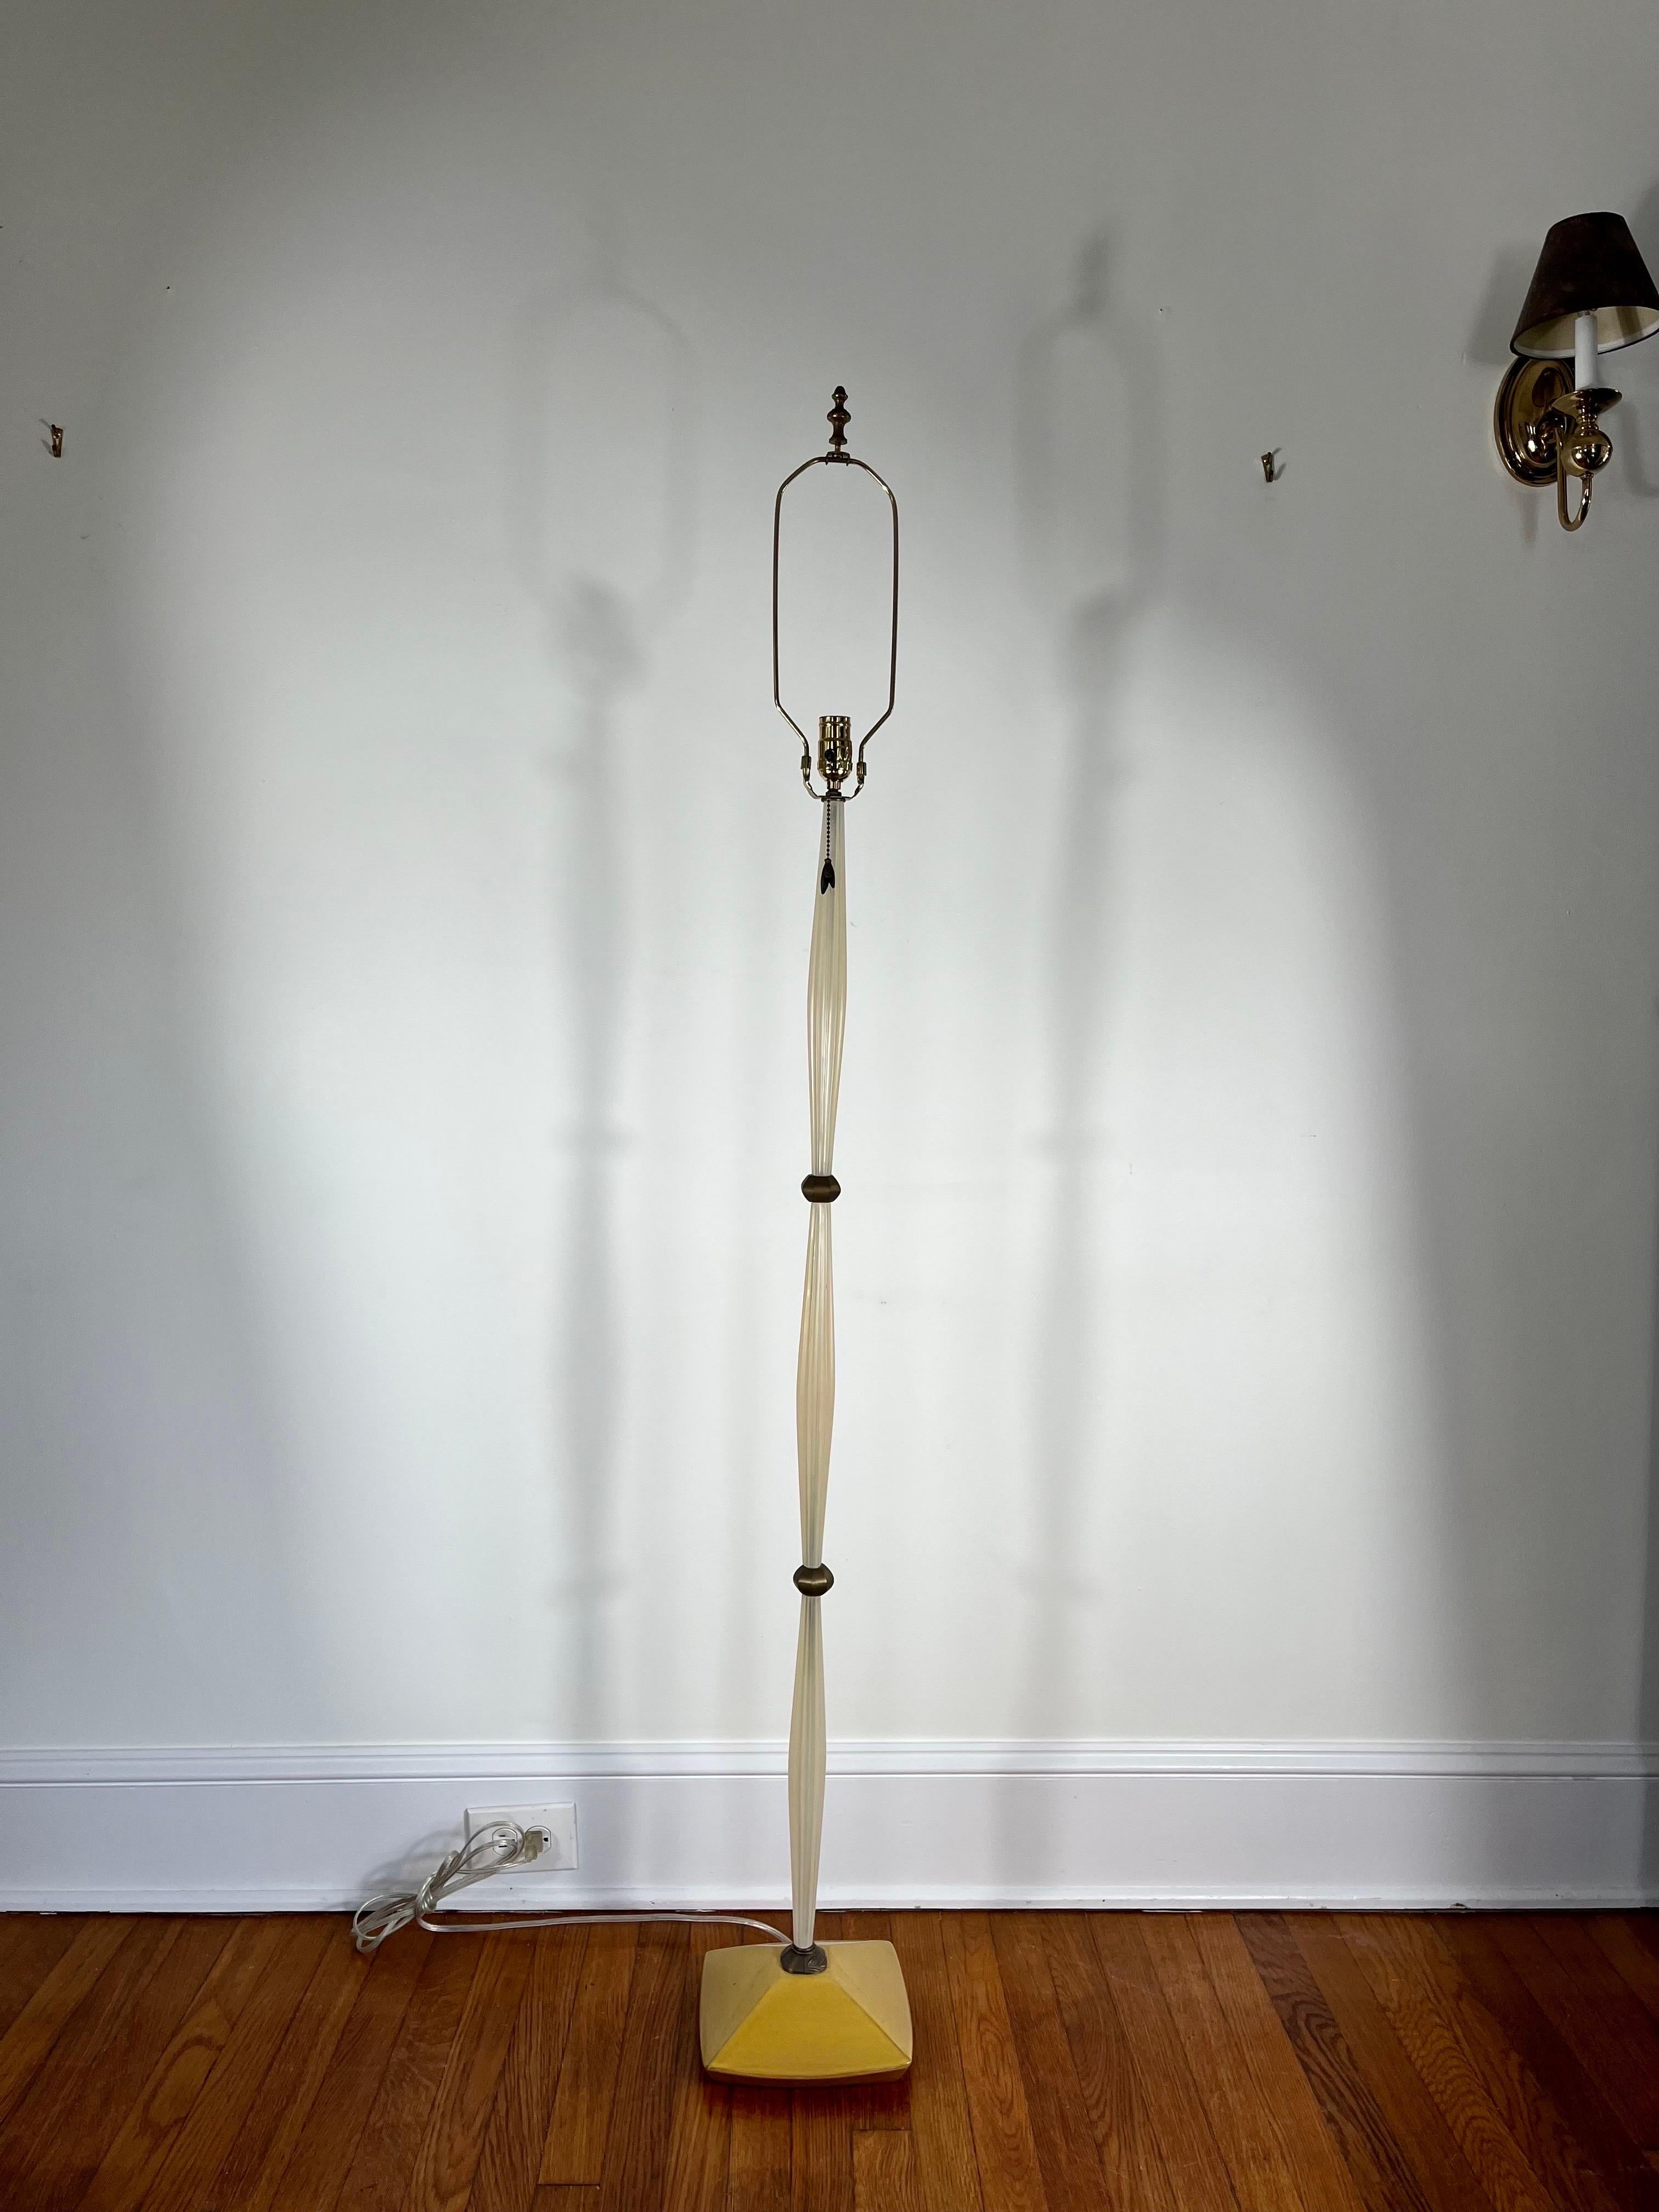 ALTAMIRA by MICHAEL LAMAR Stehleuchte. Artisan Hand Crafted Acrylic floor amp. Glasierte Keramik Basis. MICHAEL LAMAR entwirft und gestaltet seit mehr als 25 Jahren innovative, farbenfrohe und skurrile Lampen und unterrichtet seit 1985 an der Rhode